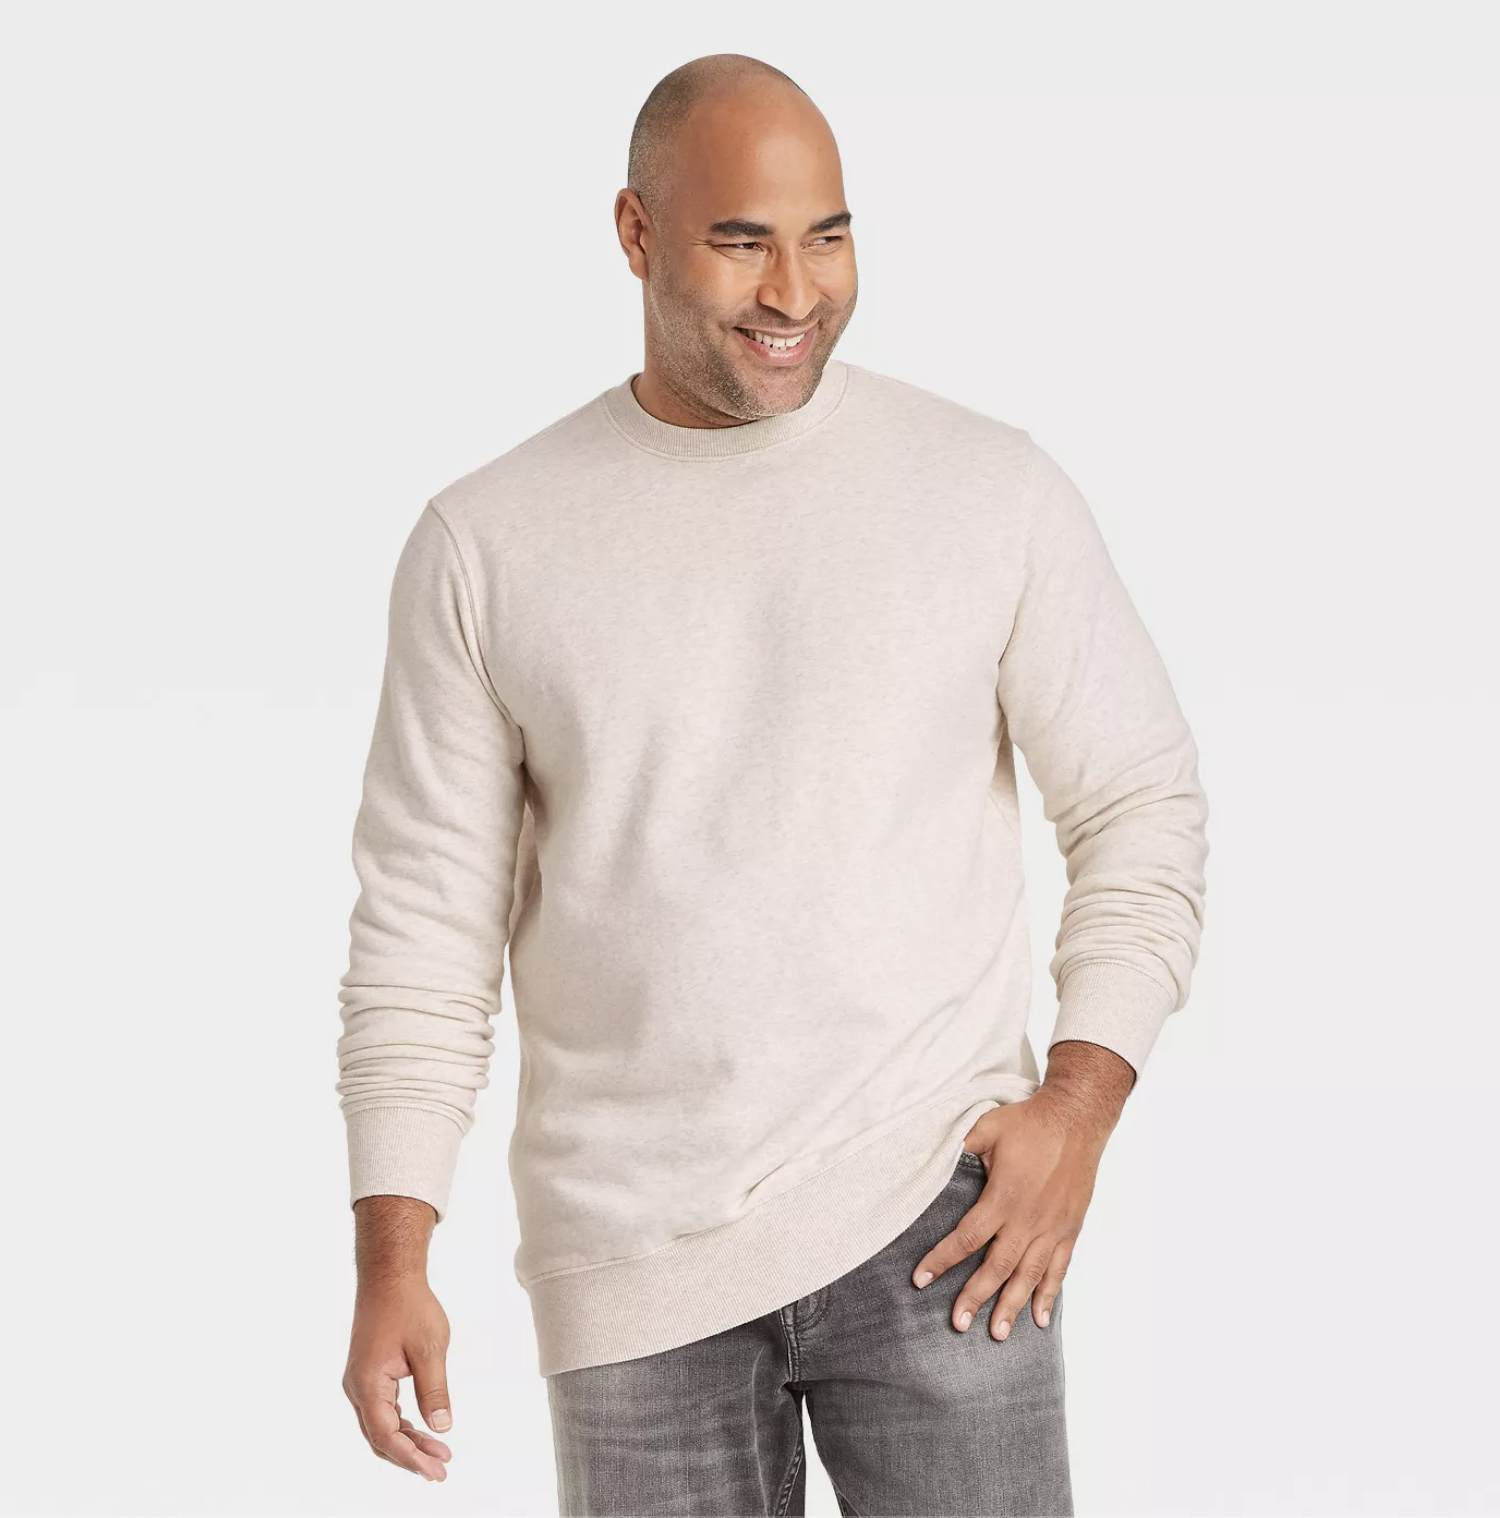 A crewneck sweatshirt in cream